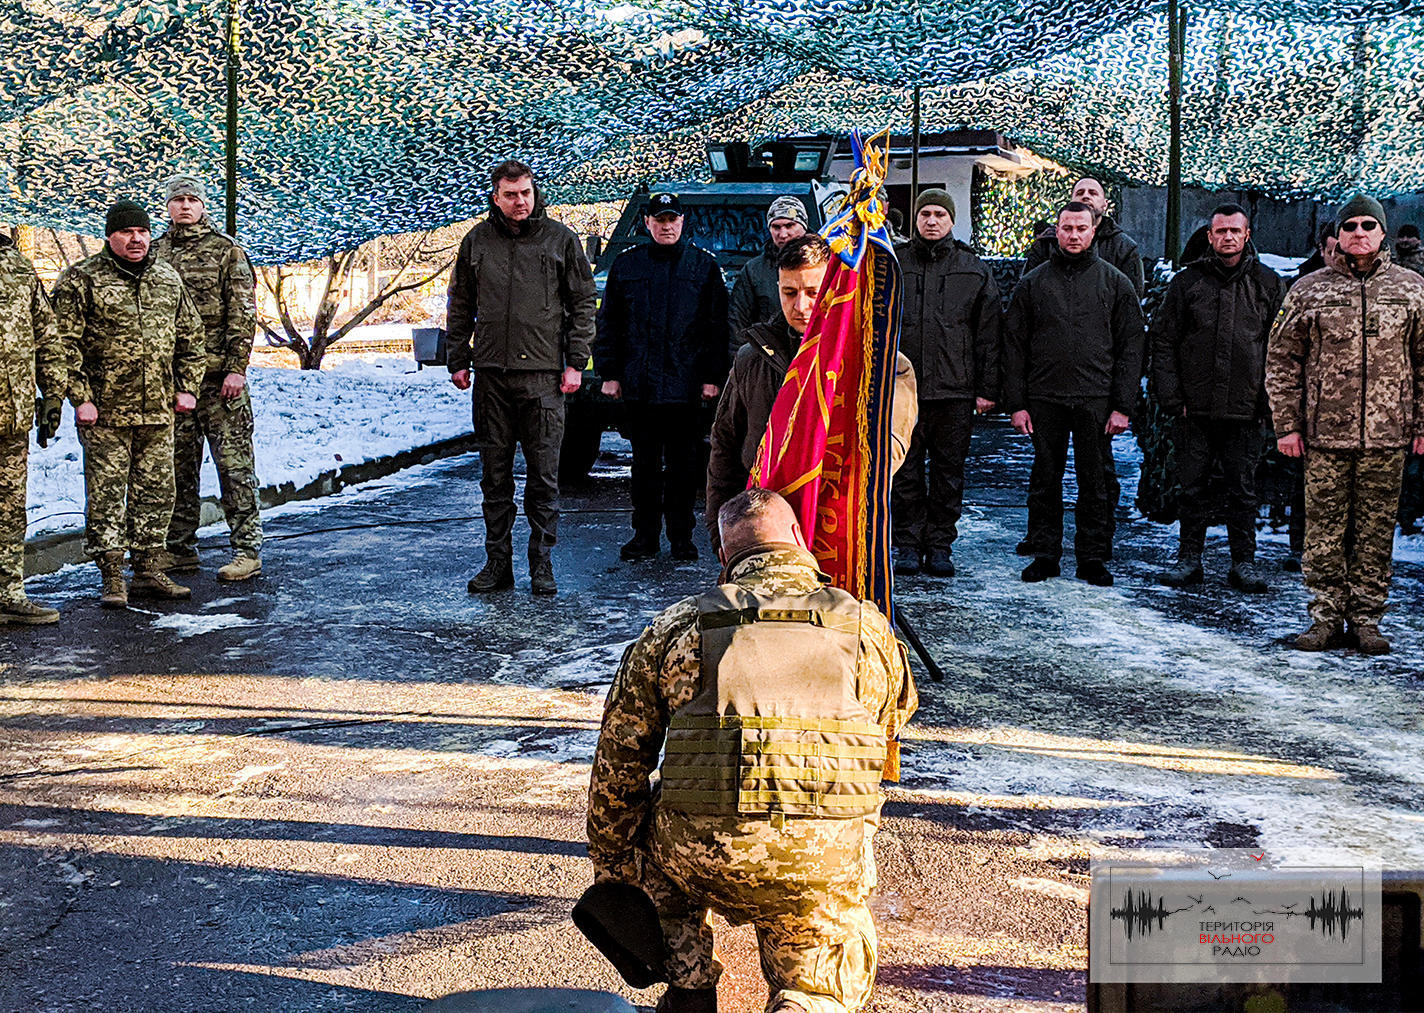 Добровольчий батальйон “Донбас” отримав почесне звання і бойовий прапор (ФОТО)